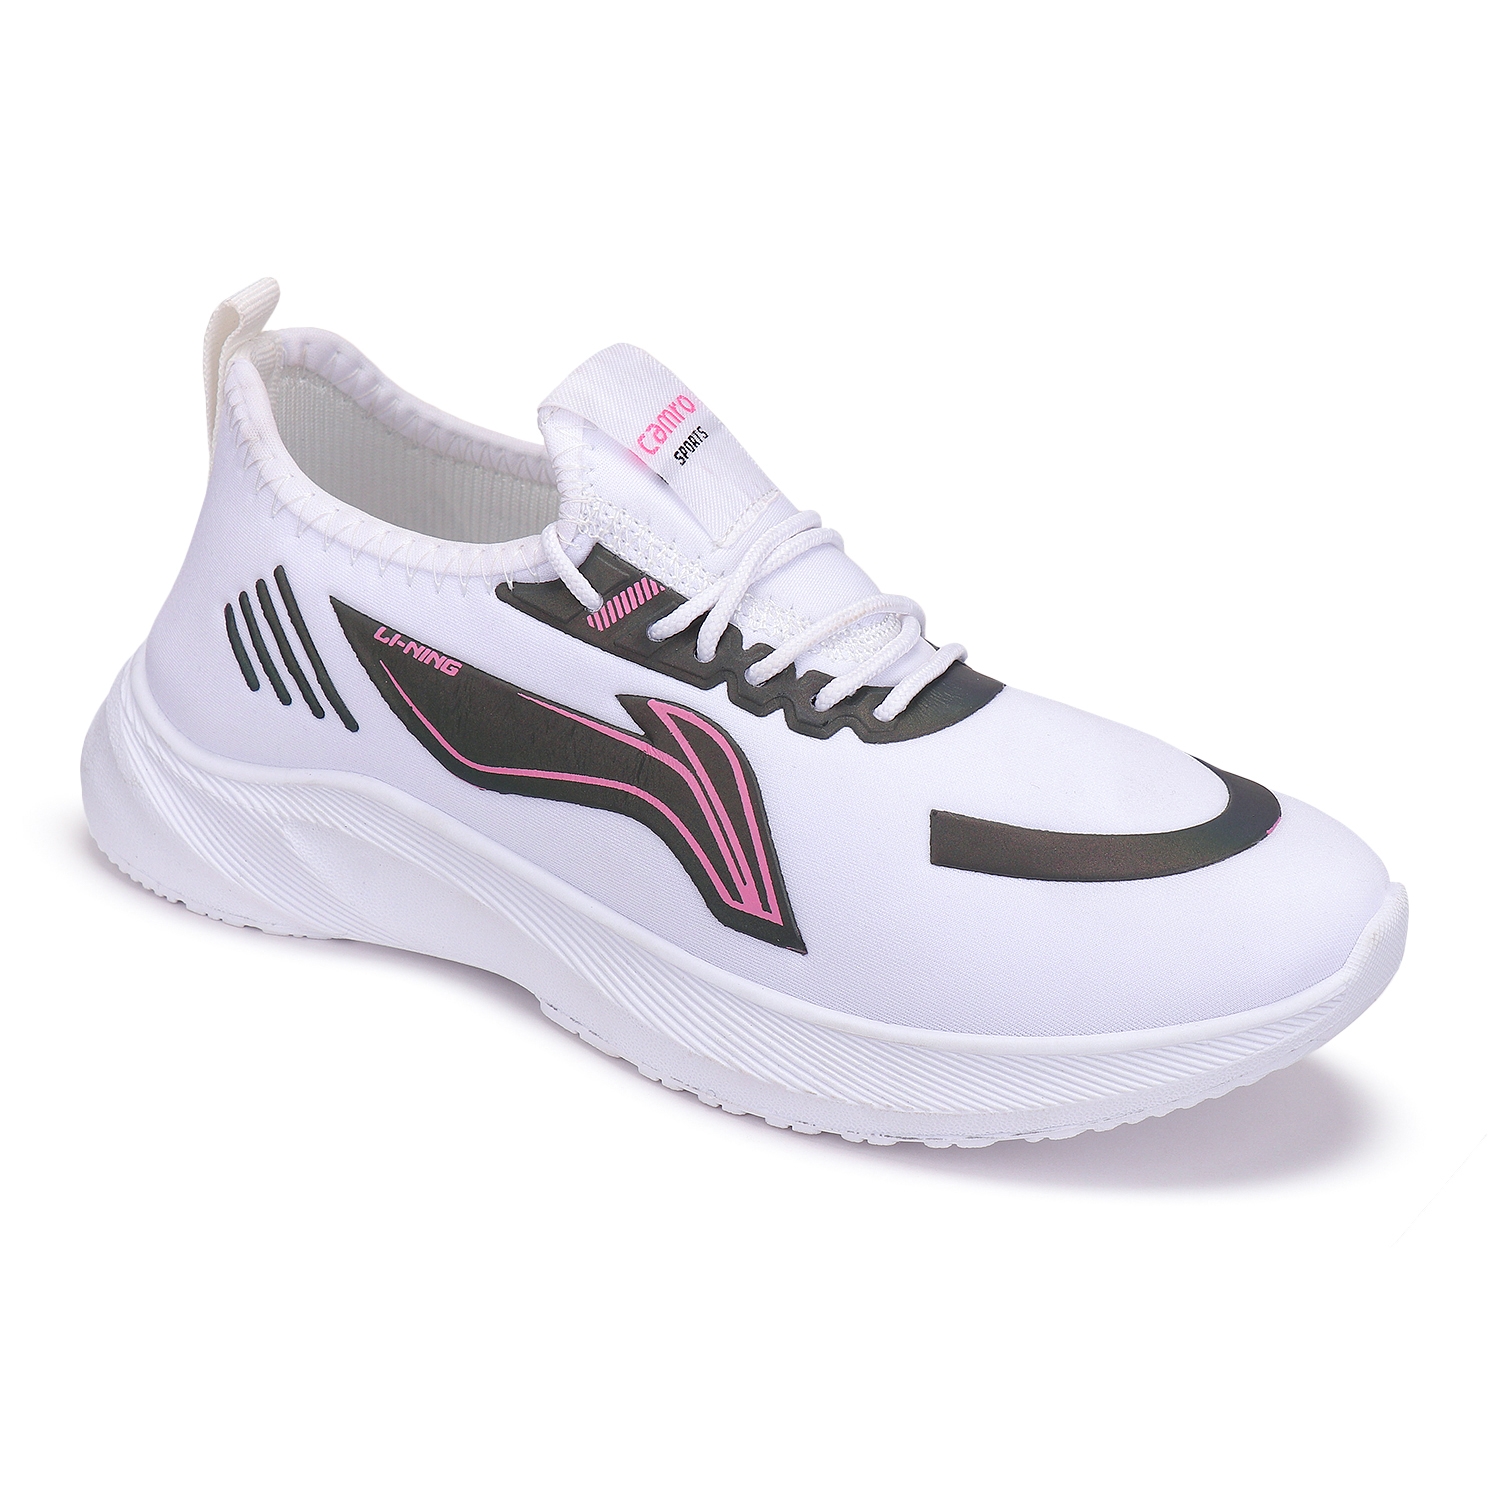 Camro Kiara 51 White/Onion Women Running Shoe